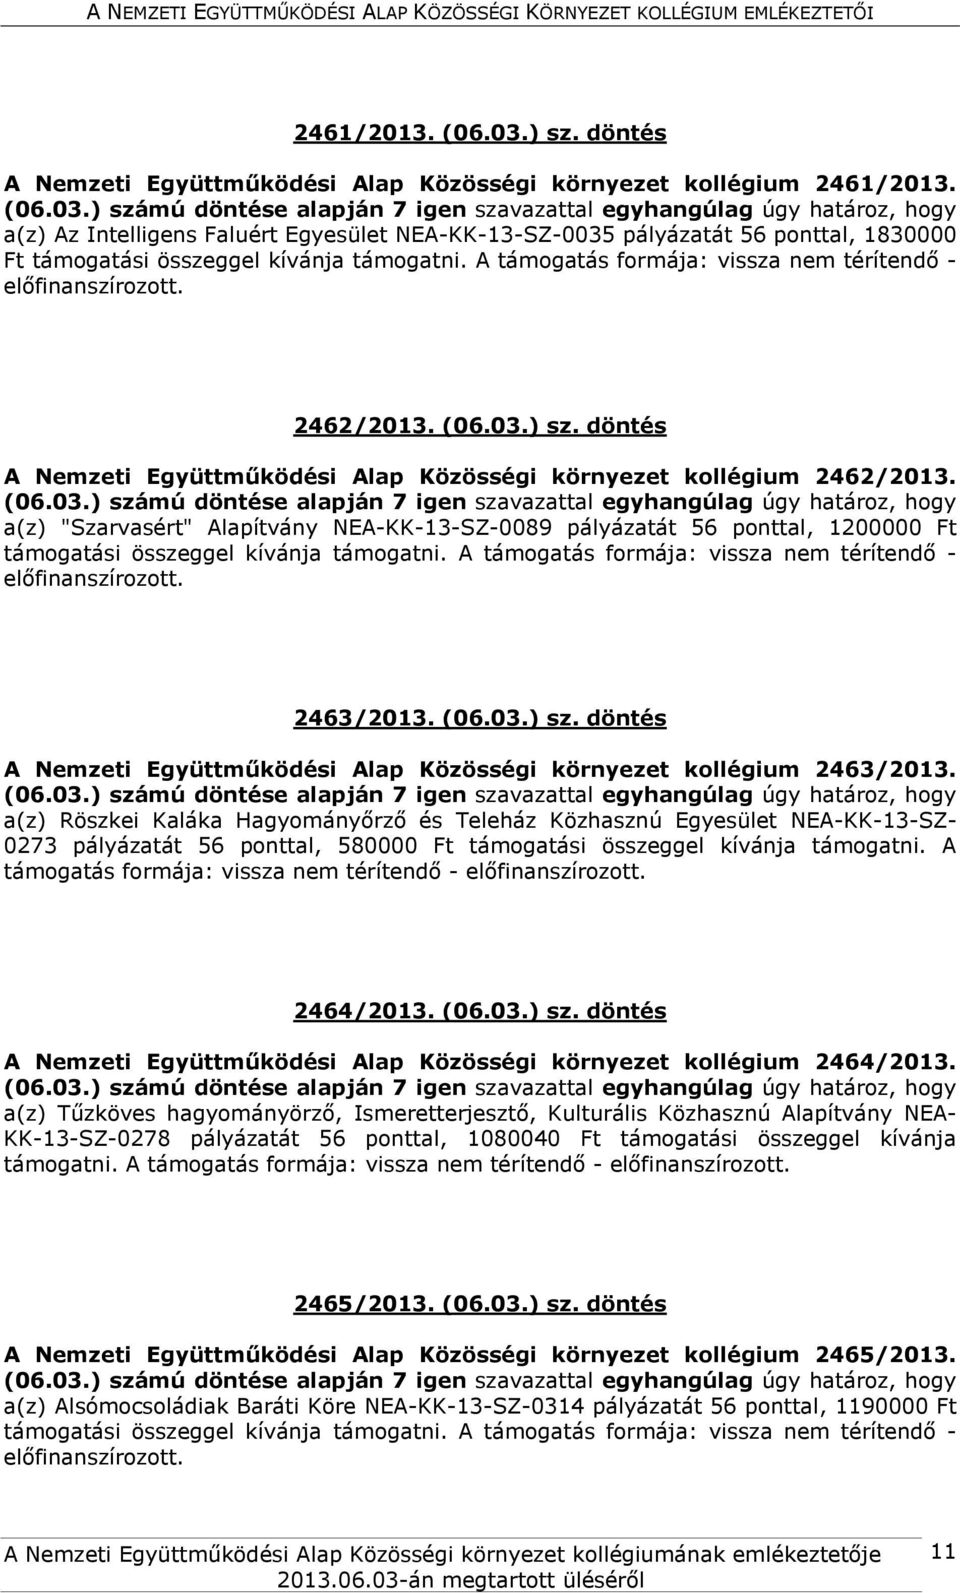 a(z) "Szarvasért" Alapítvány NEA-KK-13-SZ-0089 pályázatát 56 ponttal, 1200000 Ft 2463/2013. (06.03.) sz. döntés A Nemzeti Együttműködési Alap Közösségi környezet kollégium 2463/2013.